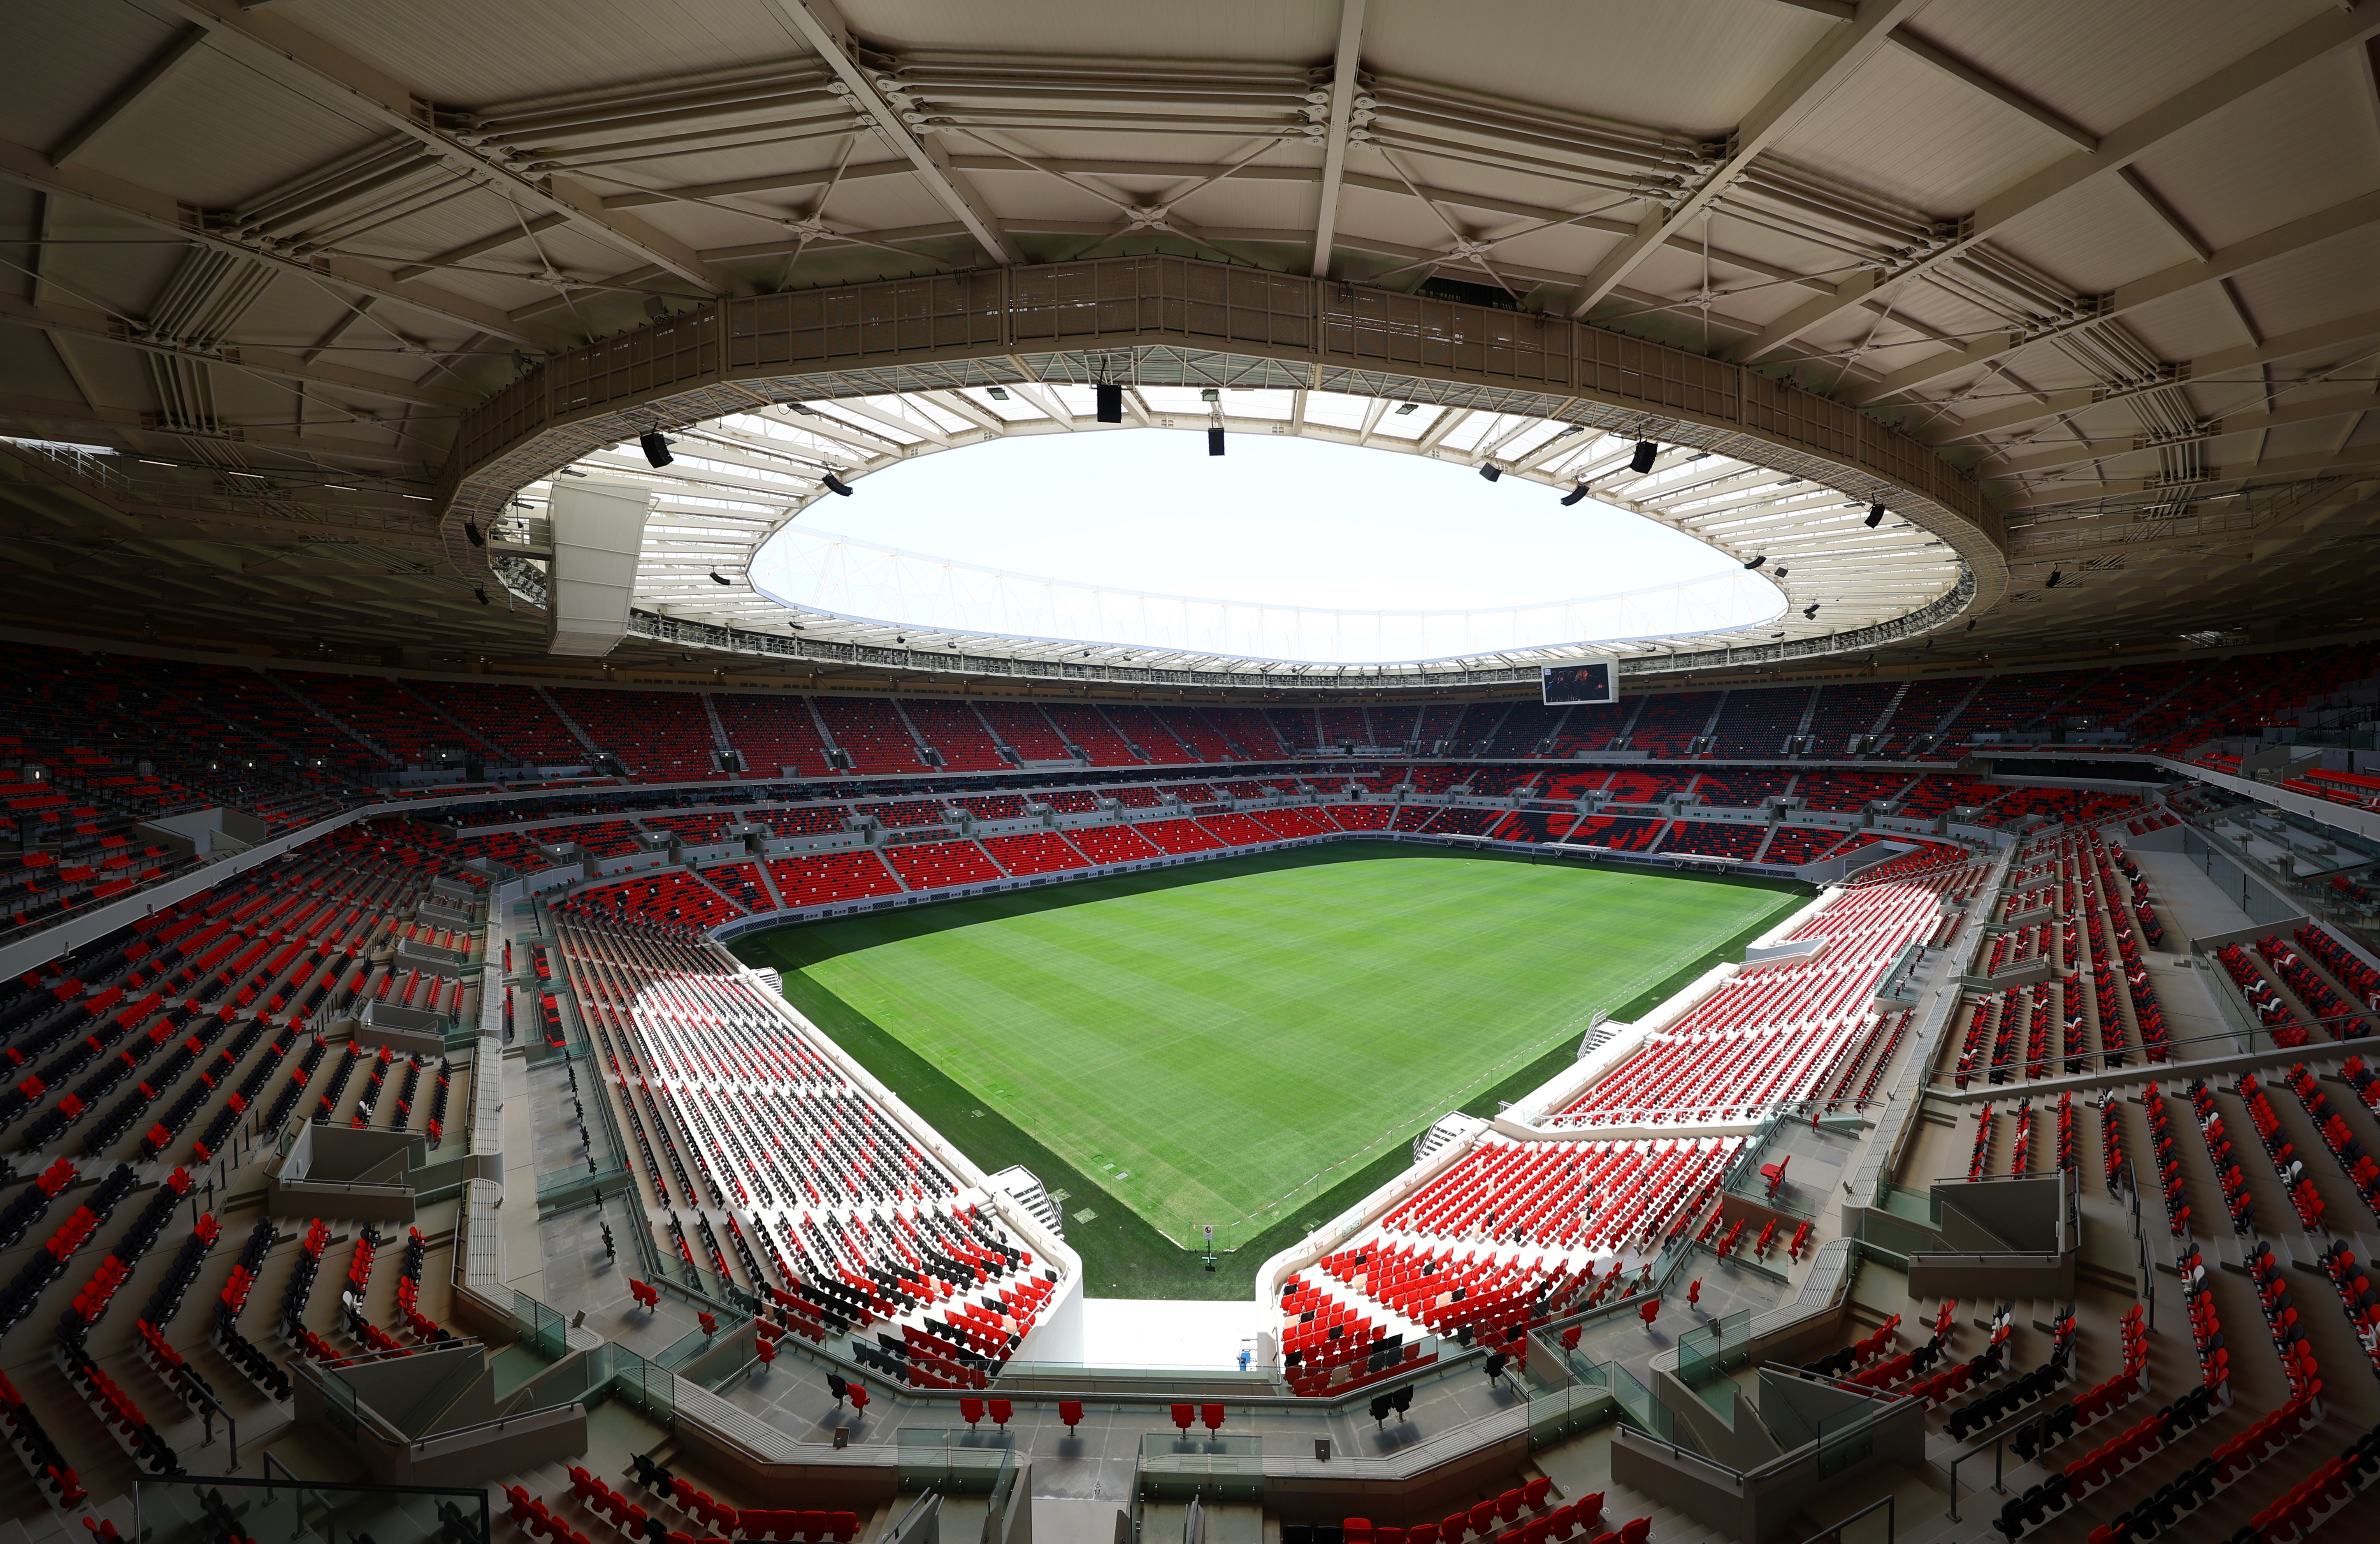 General views of the Ahmad Bin Ali Stadium